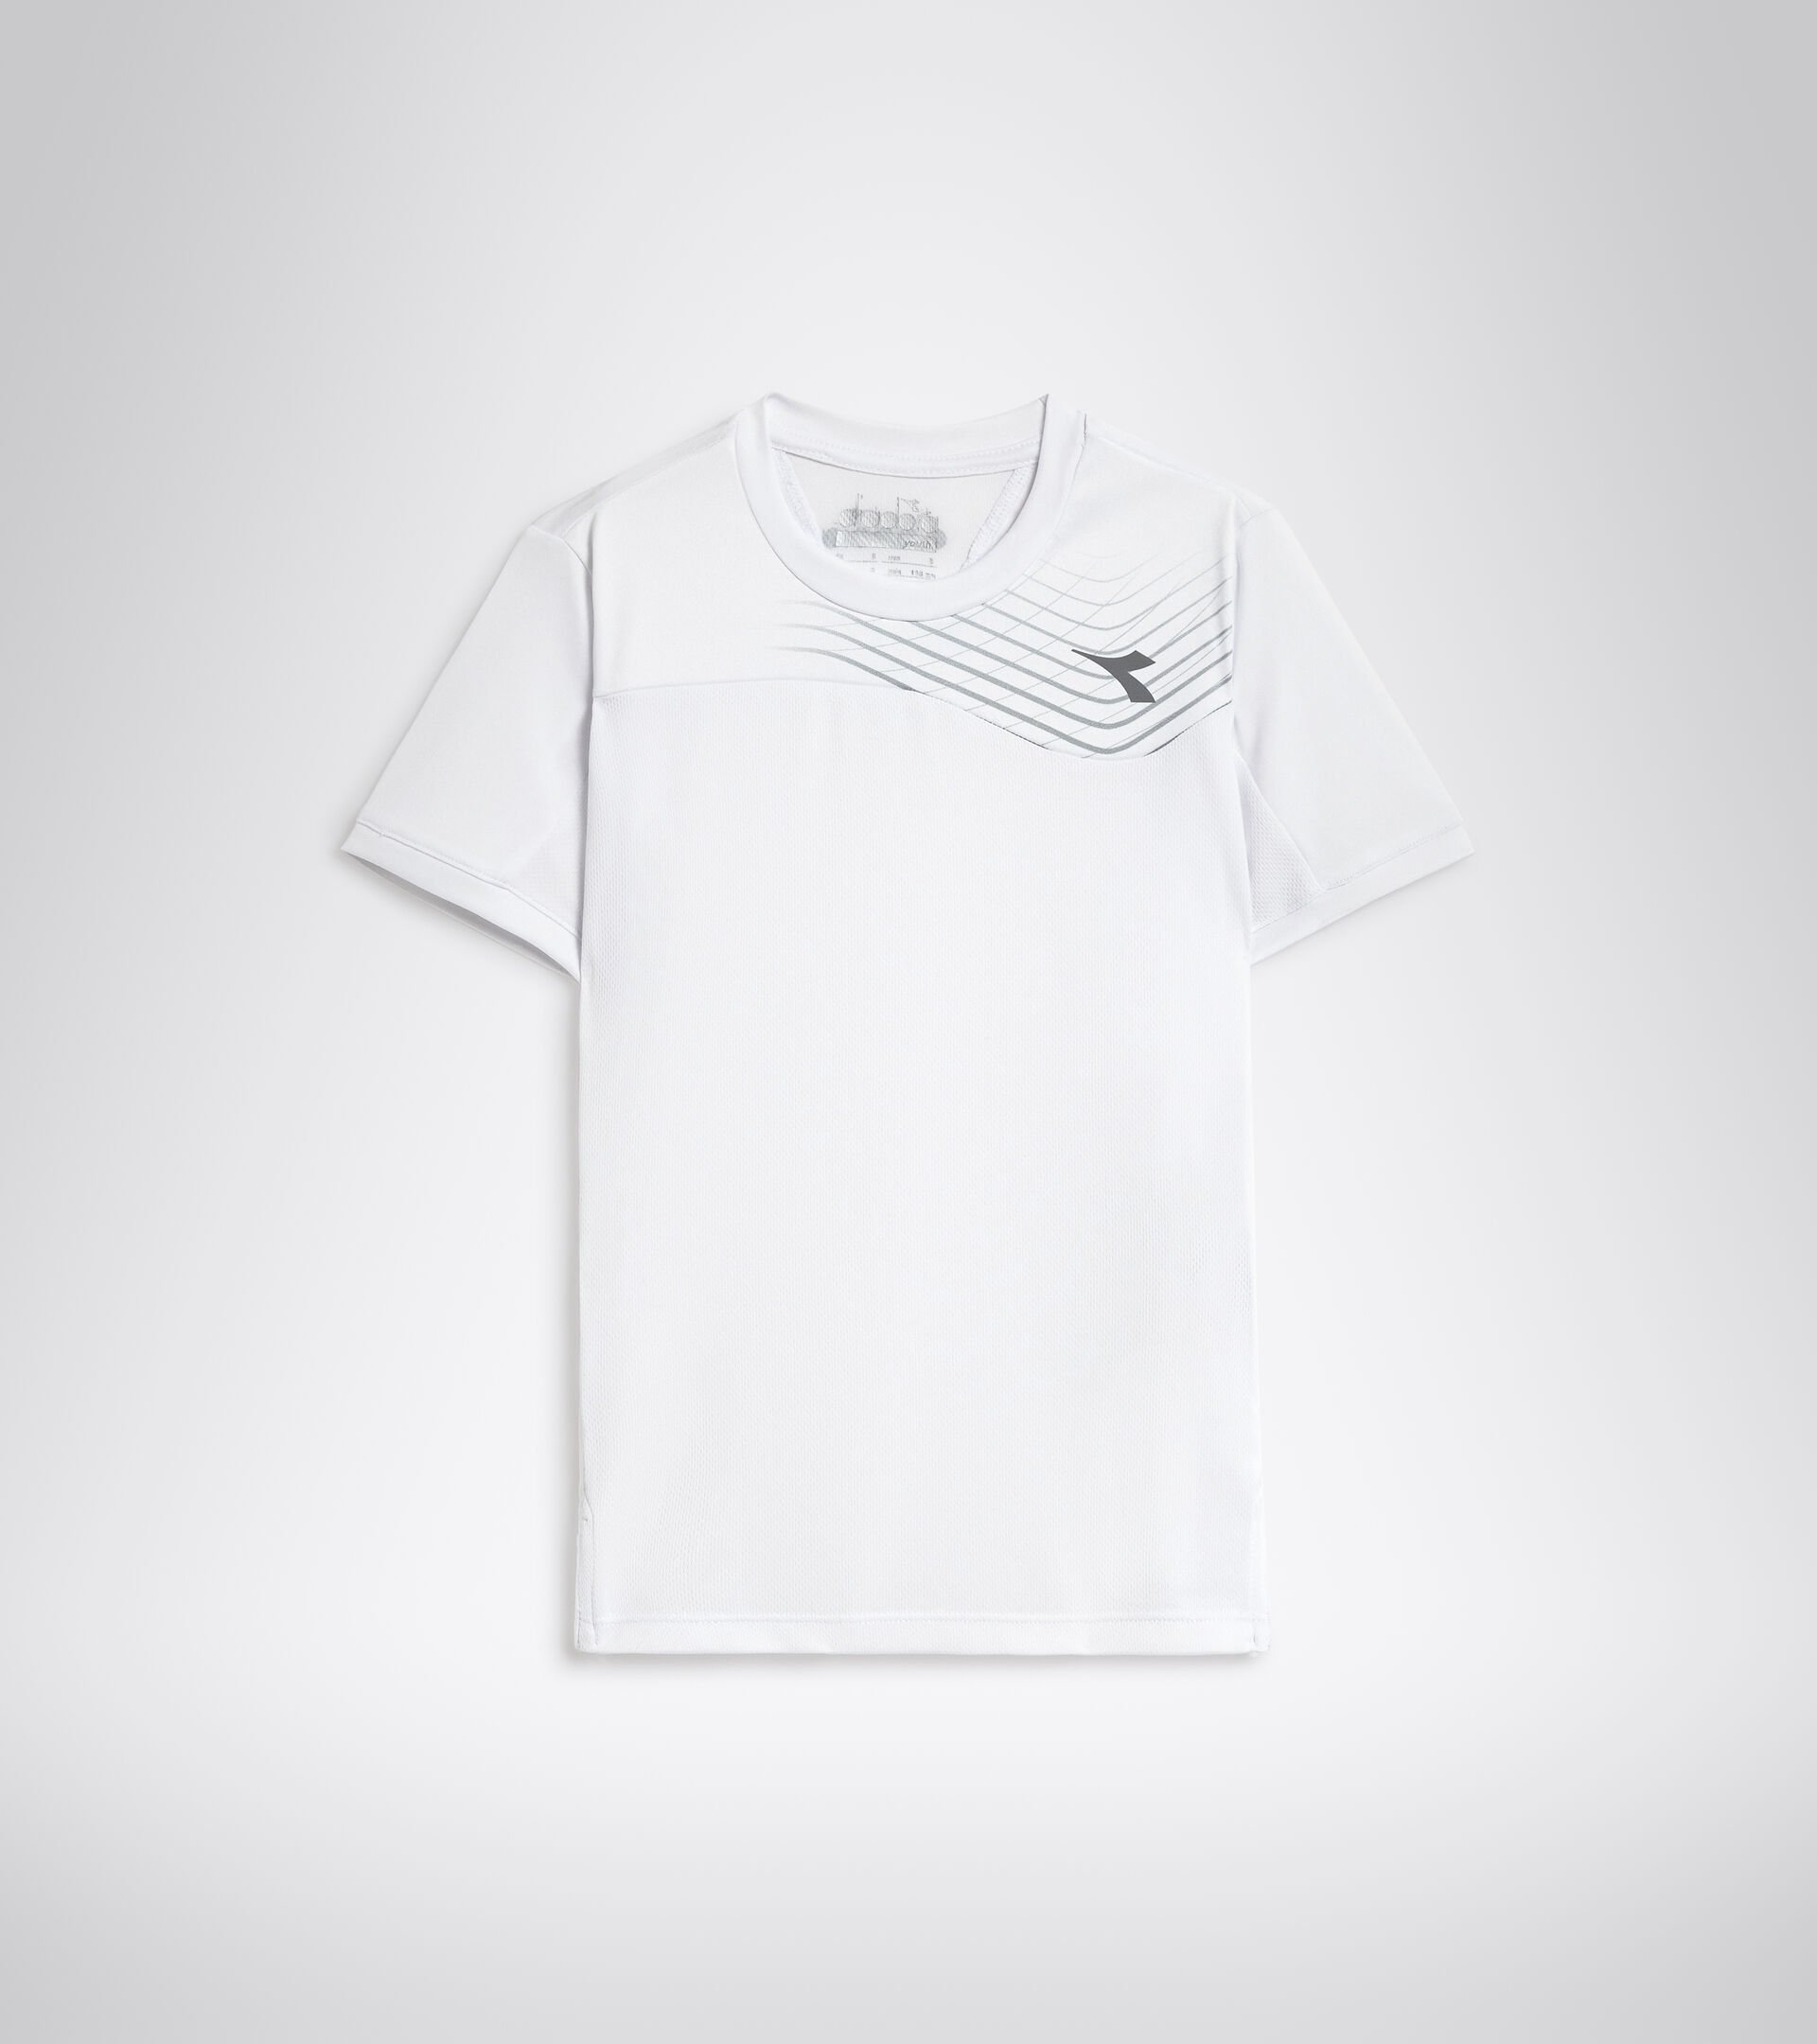 Camiseta de tenis - Junior J. T-SHIRT COURT BLANCO VIVO - Diadora